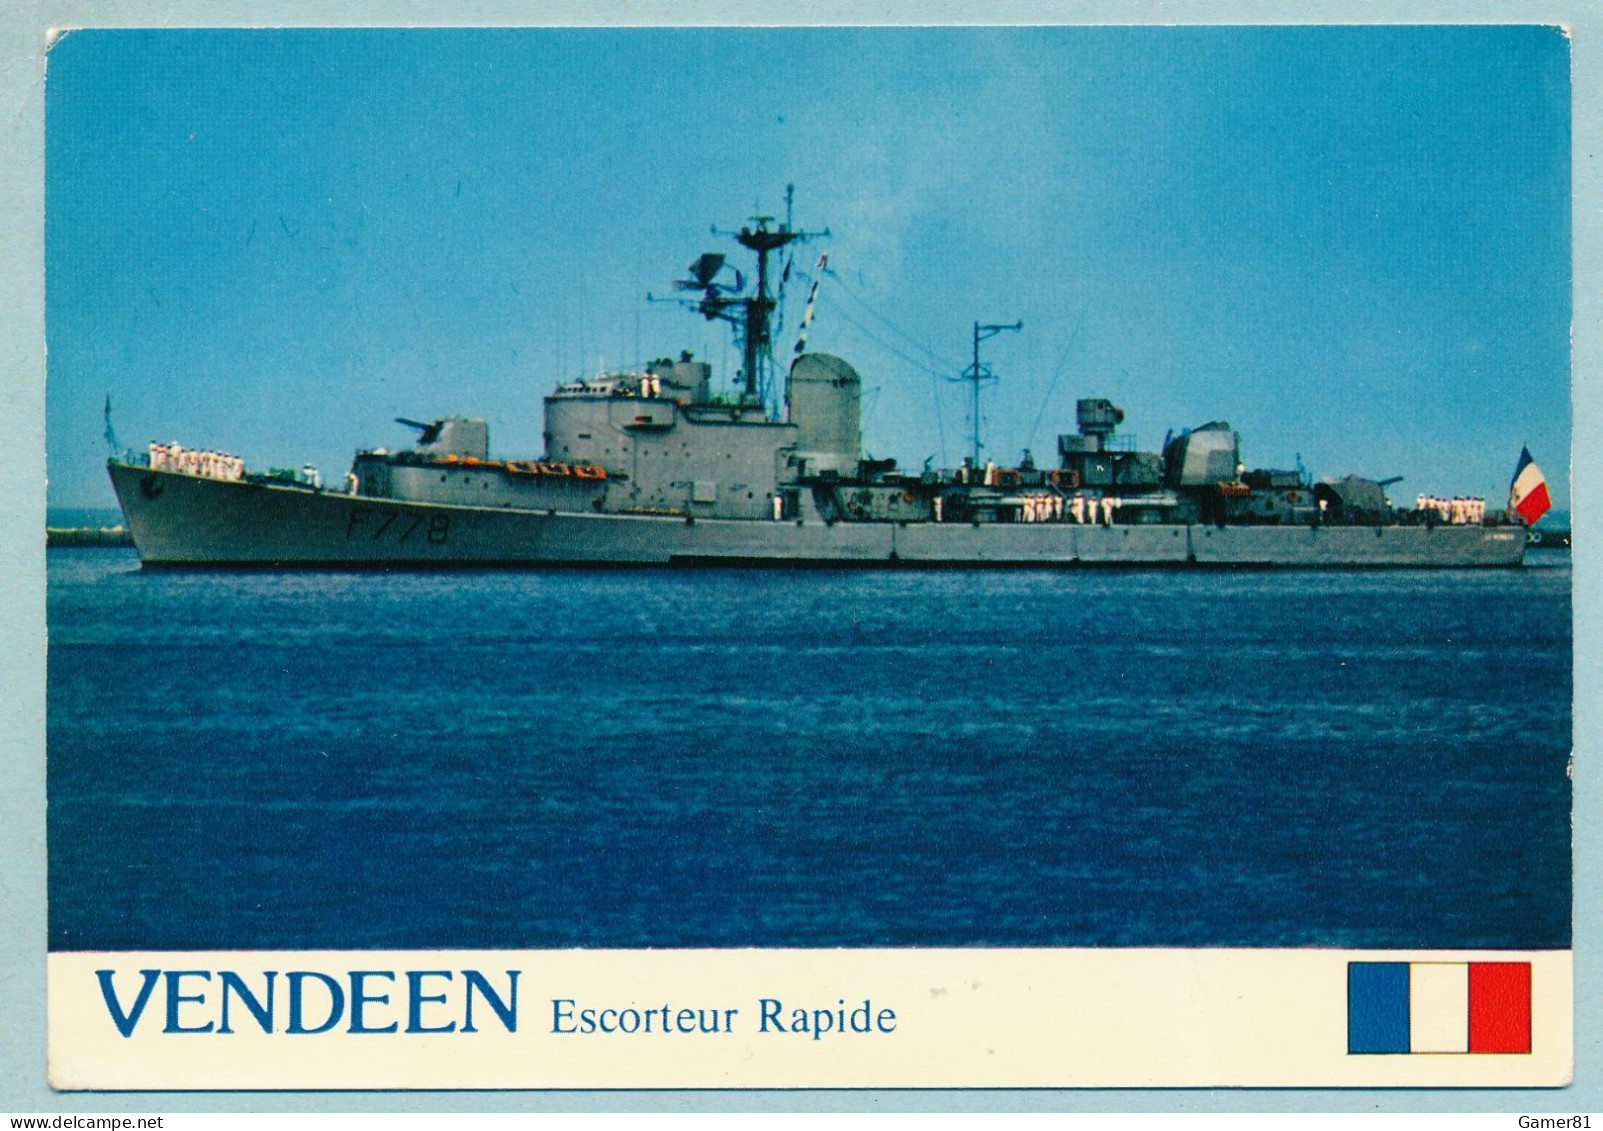 VENDEEN Escorteur Rapide 1250 Tonnes à TOULON Revue Navale 11/07/1976 Avec Le Pdt Valéry Giscard D'Estaing - Warships